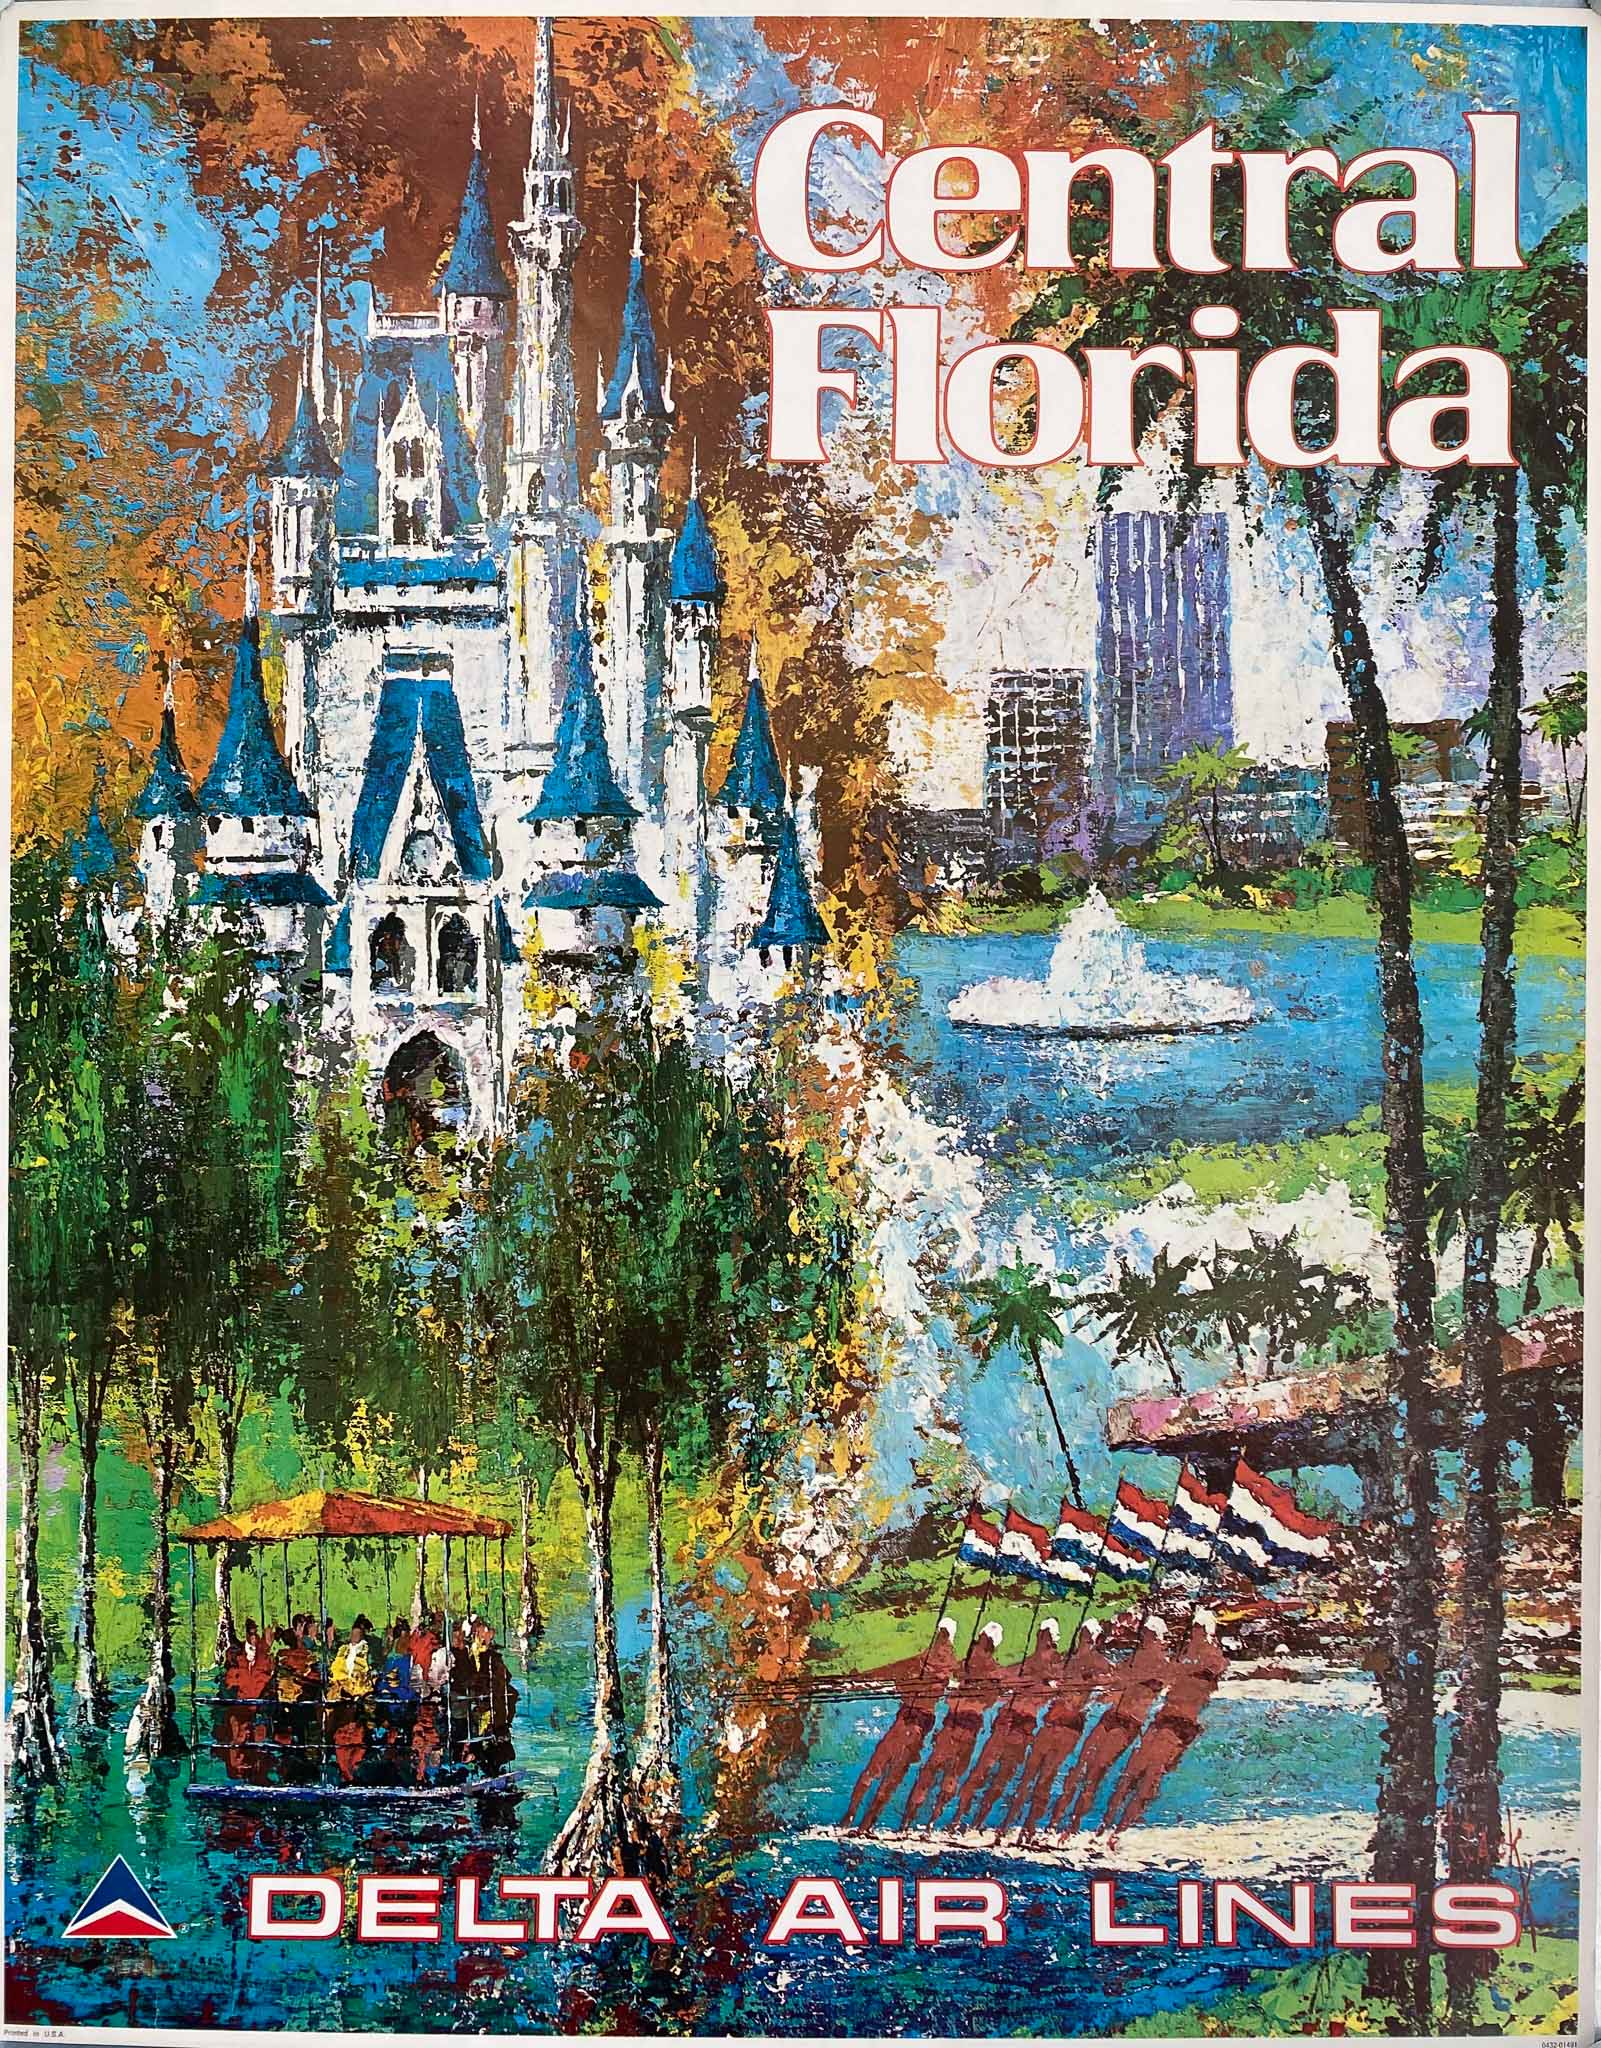 Affiche Originale Central Florida Delta Air Lines